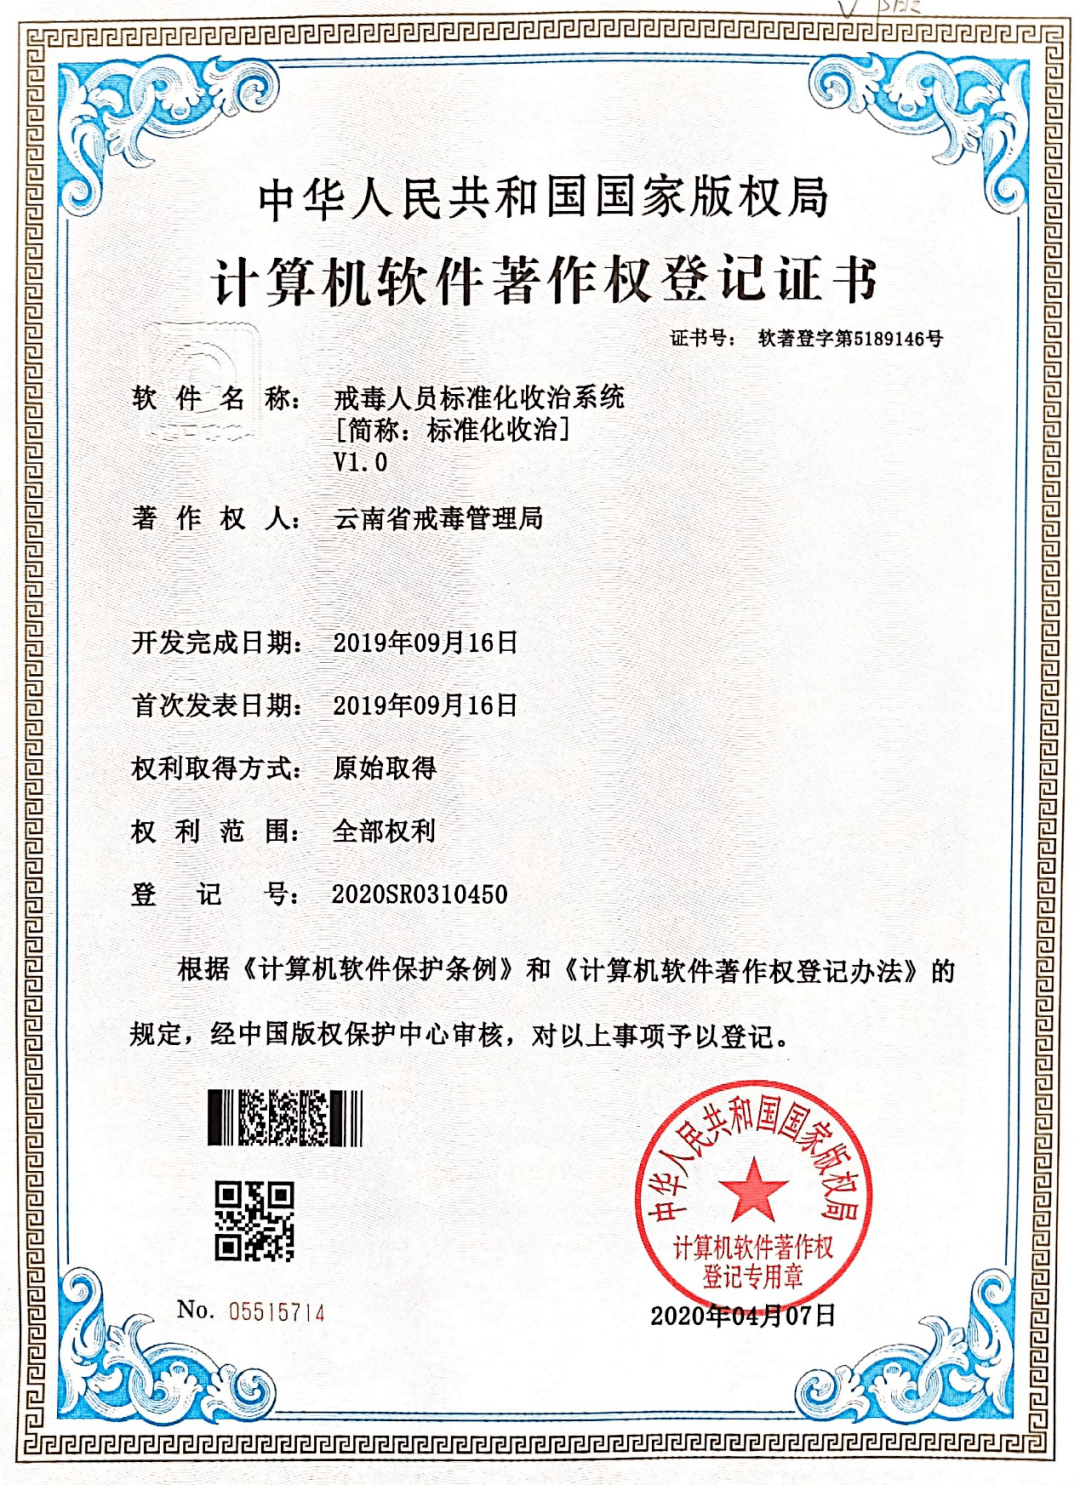 喜讯 云南省戒毒管理局标准化收治系统获国家版权局著作权认证